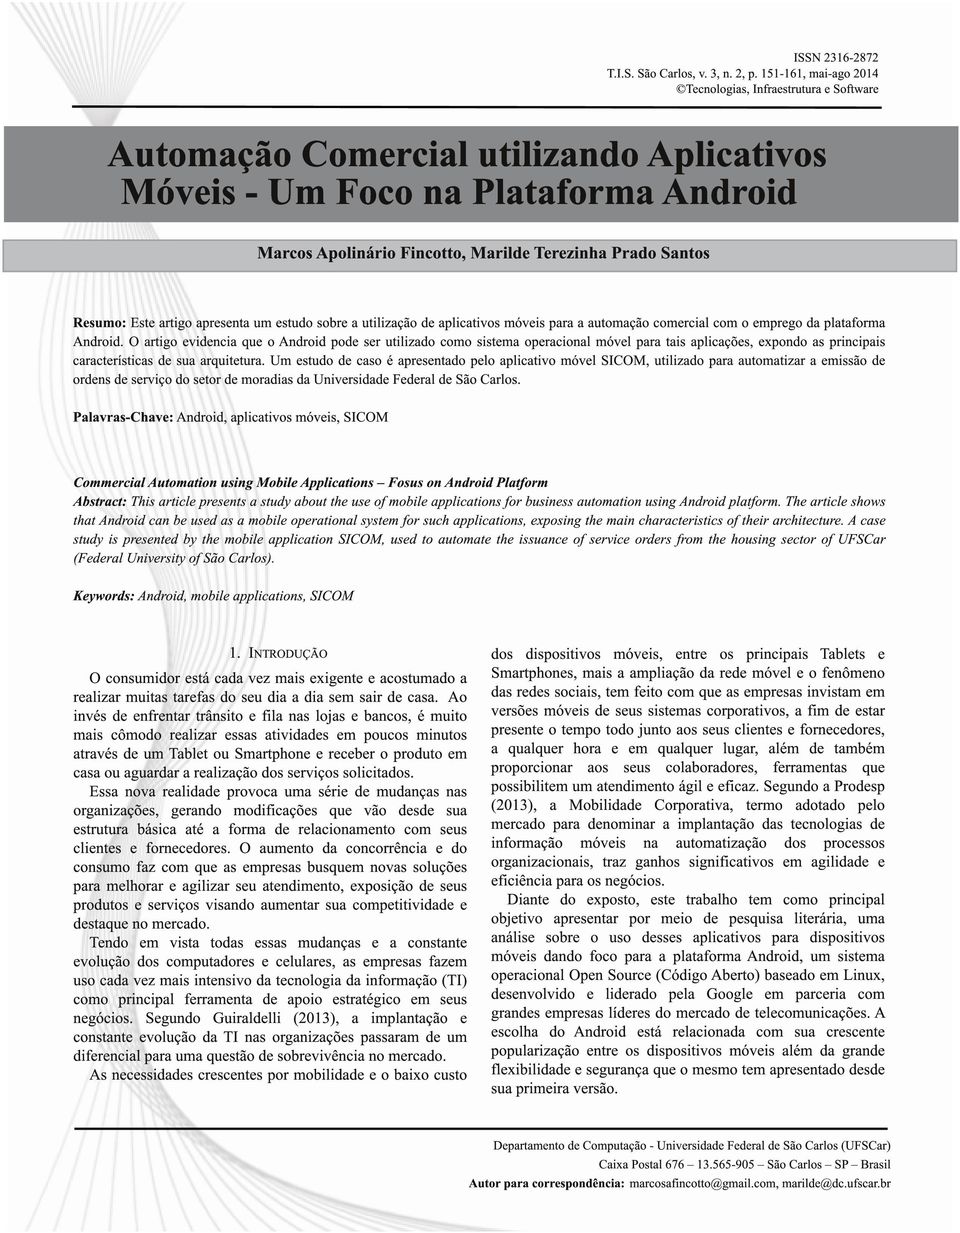 Santos Resumo: Este artigo apresenta um estudo sobre a utilização de aplicativos móveis para a automação comercial com o emprego da plataforma Android.